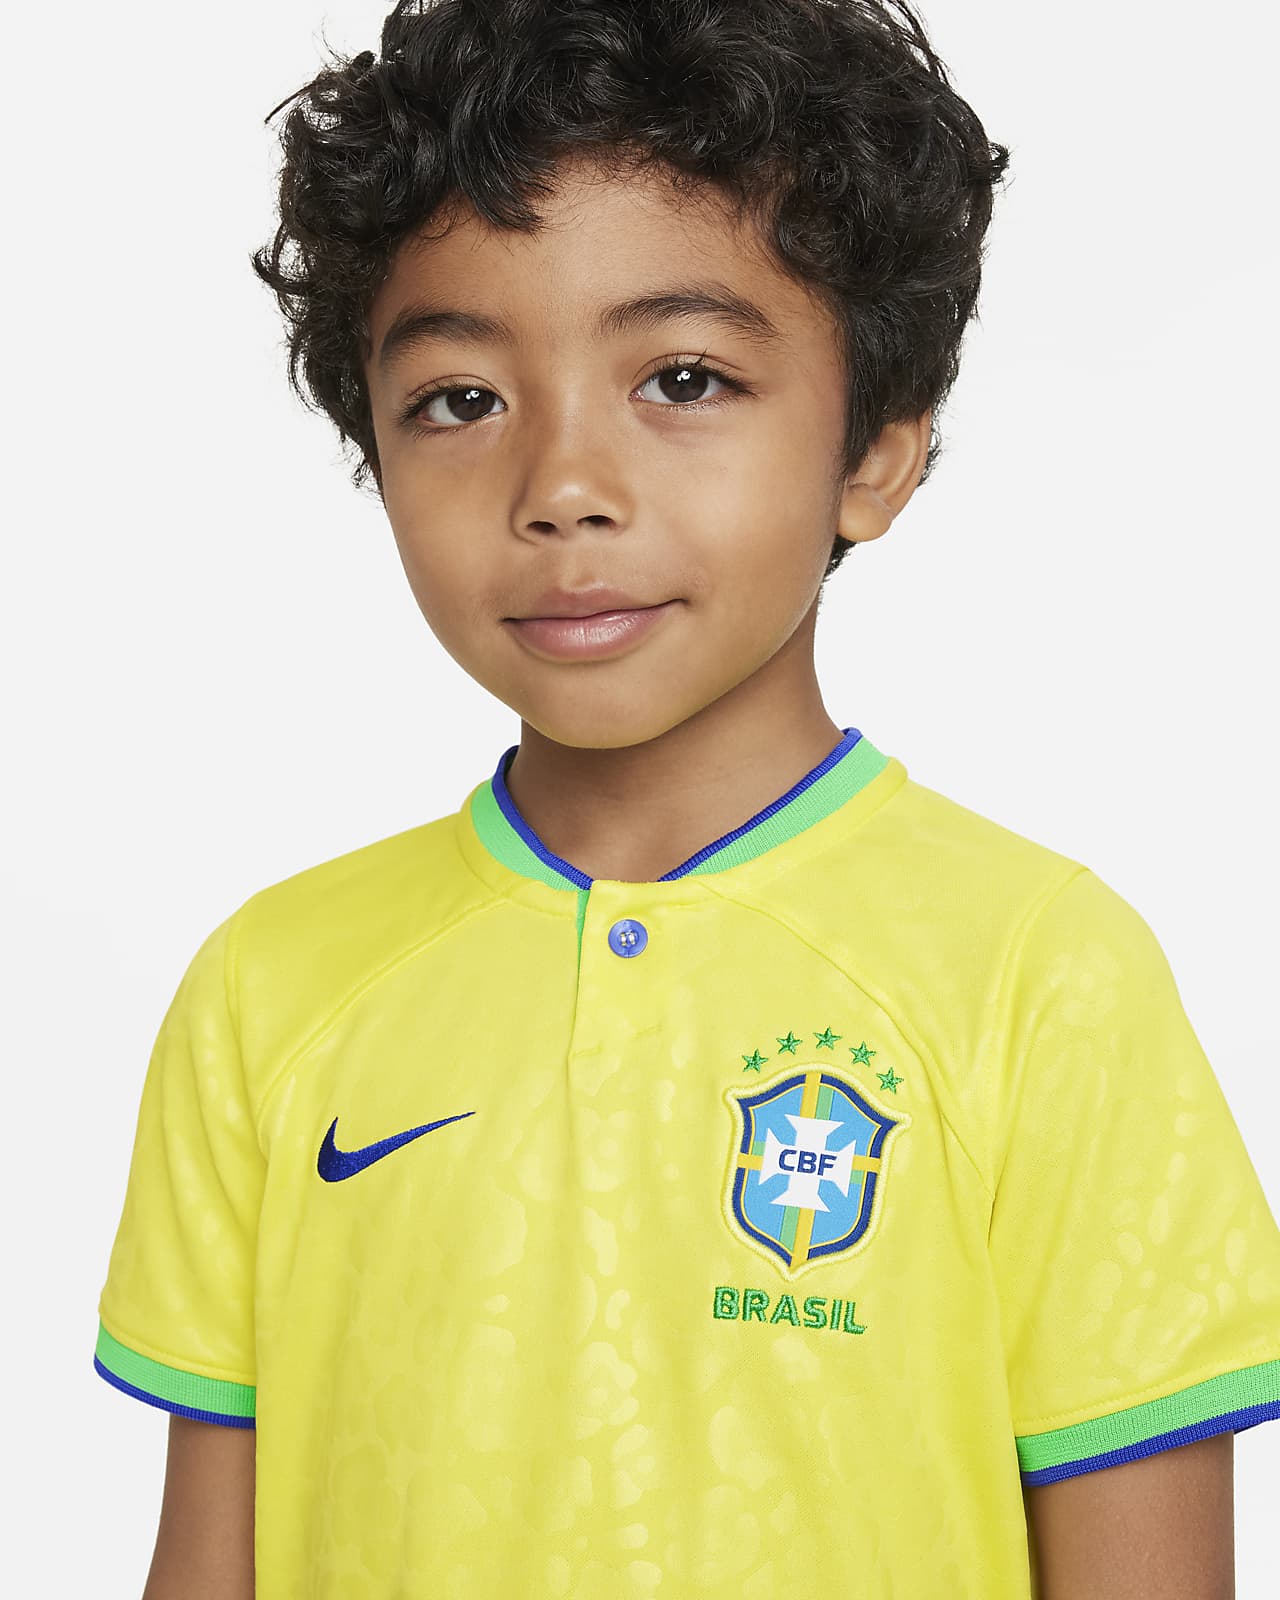 2022 Nike Brazil Home Jersey